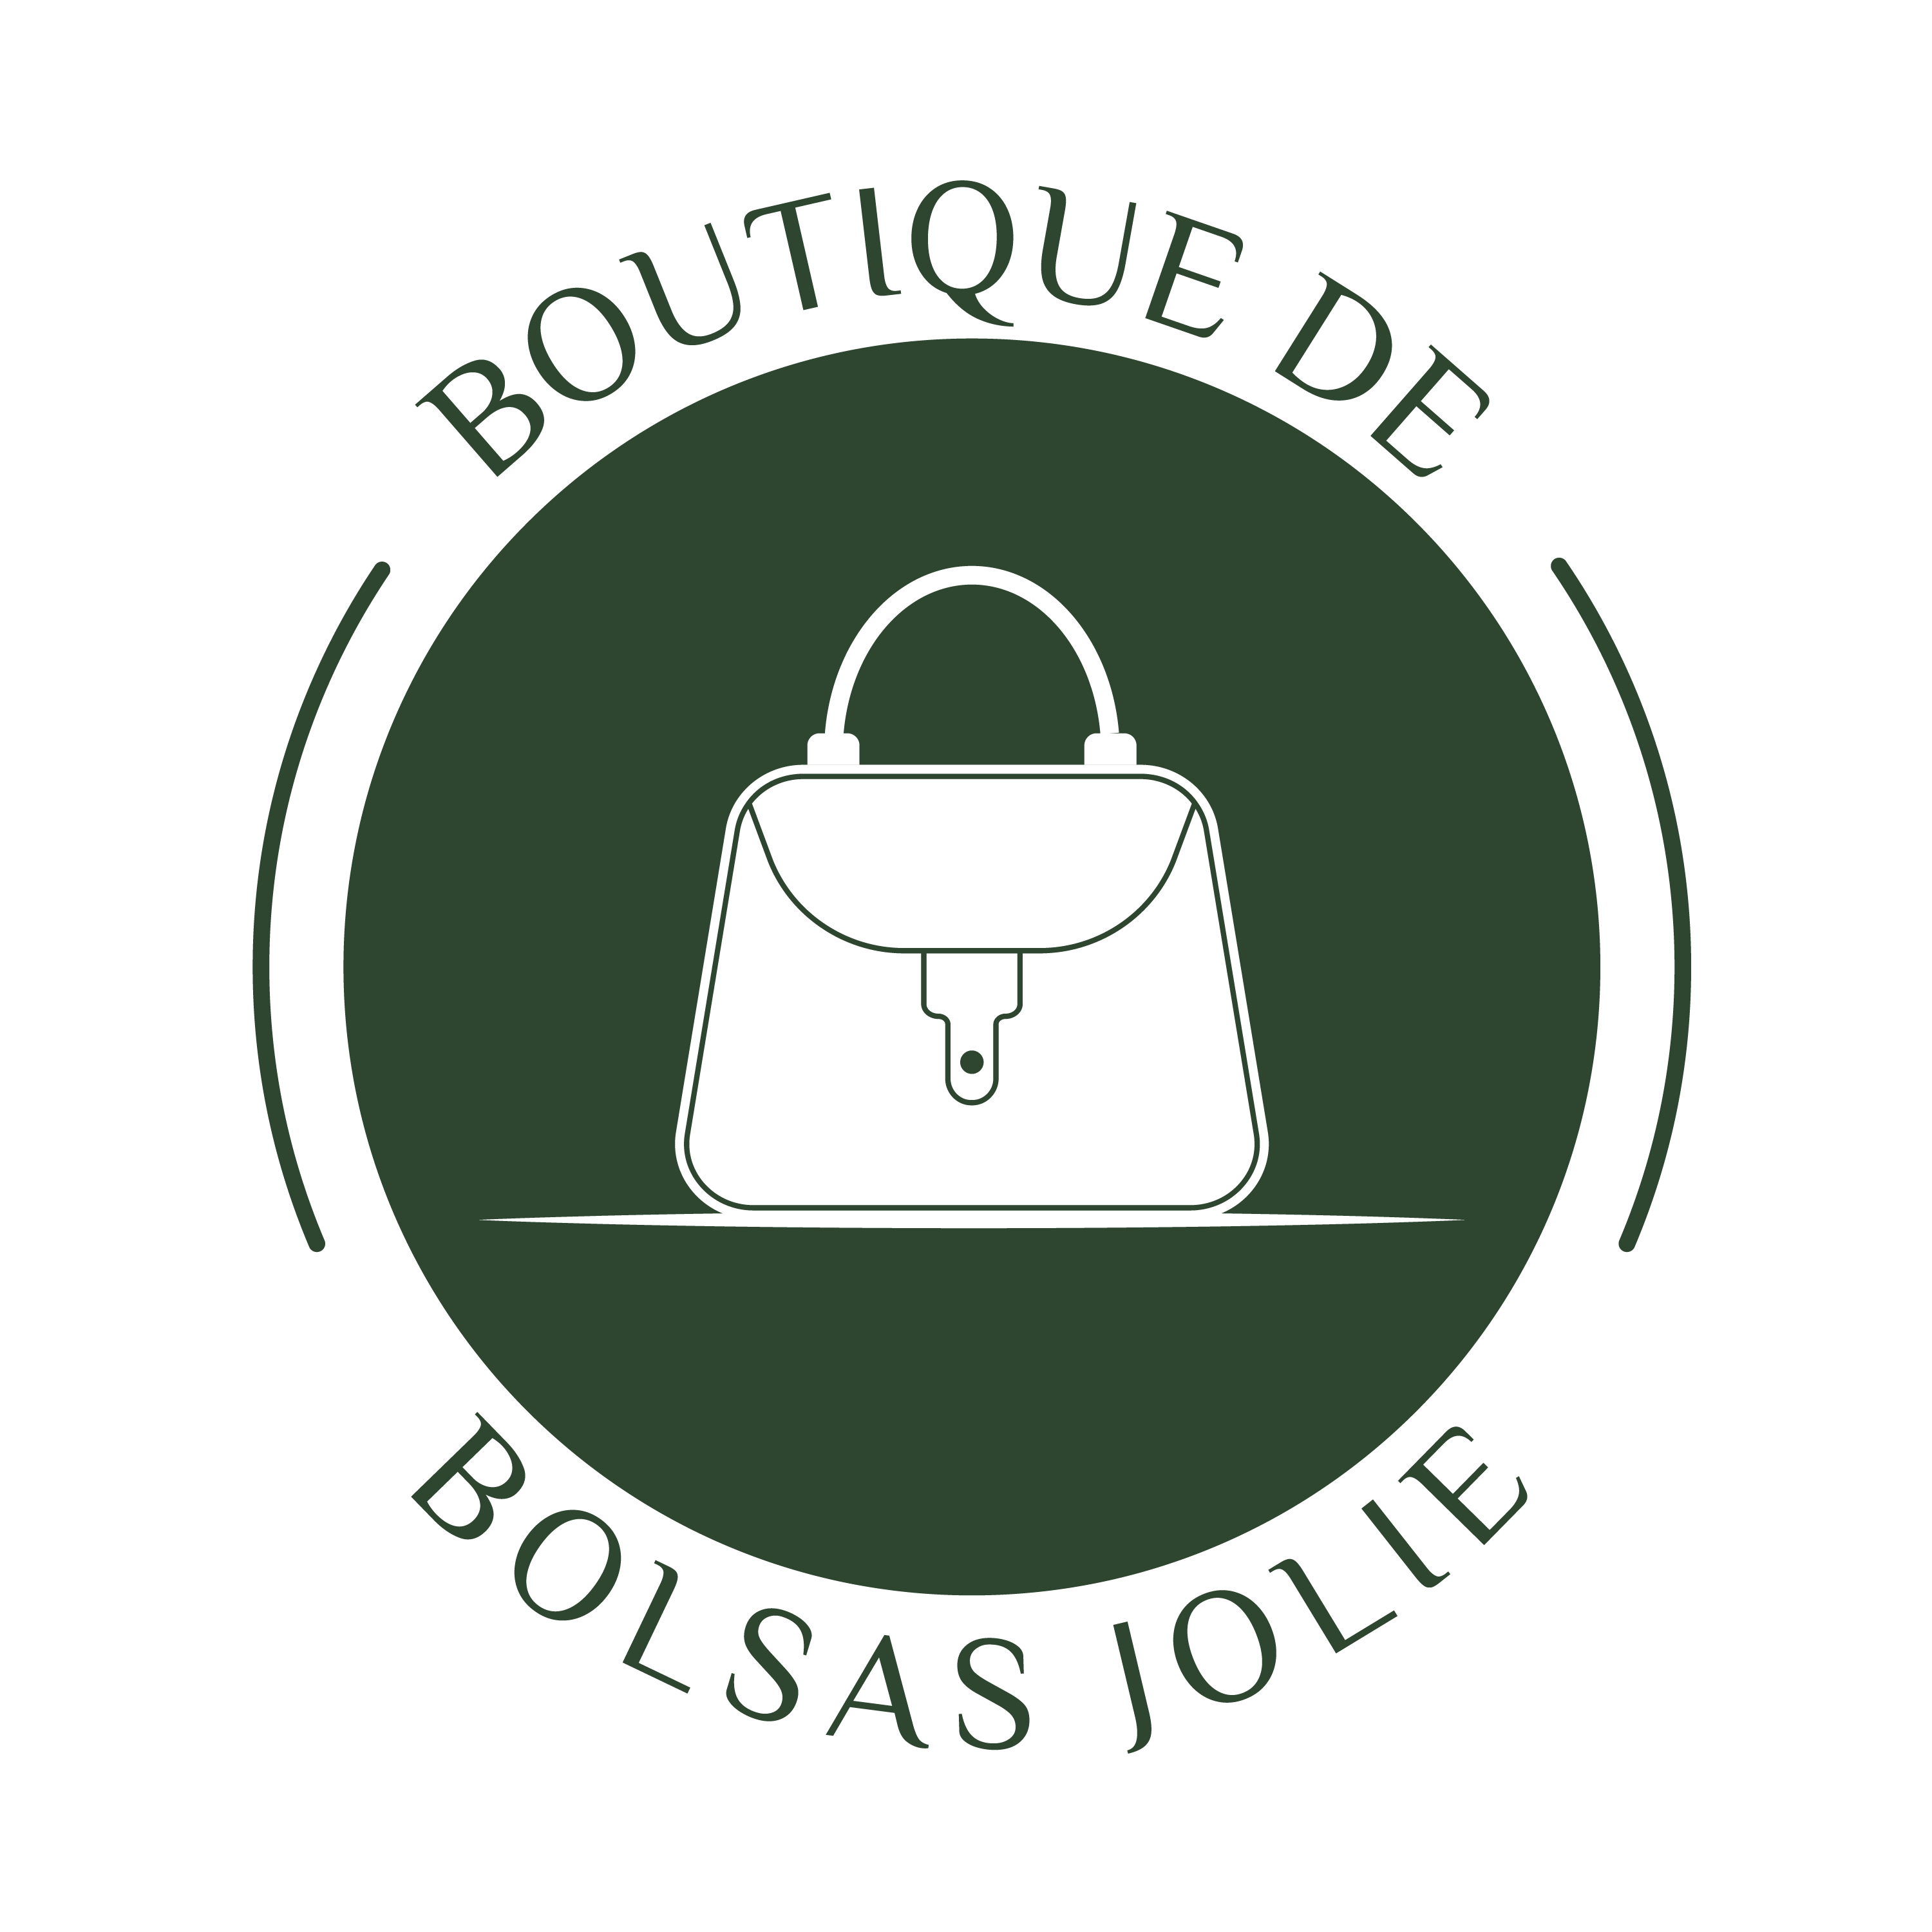 Boutique de Bolsas Jolie